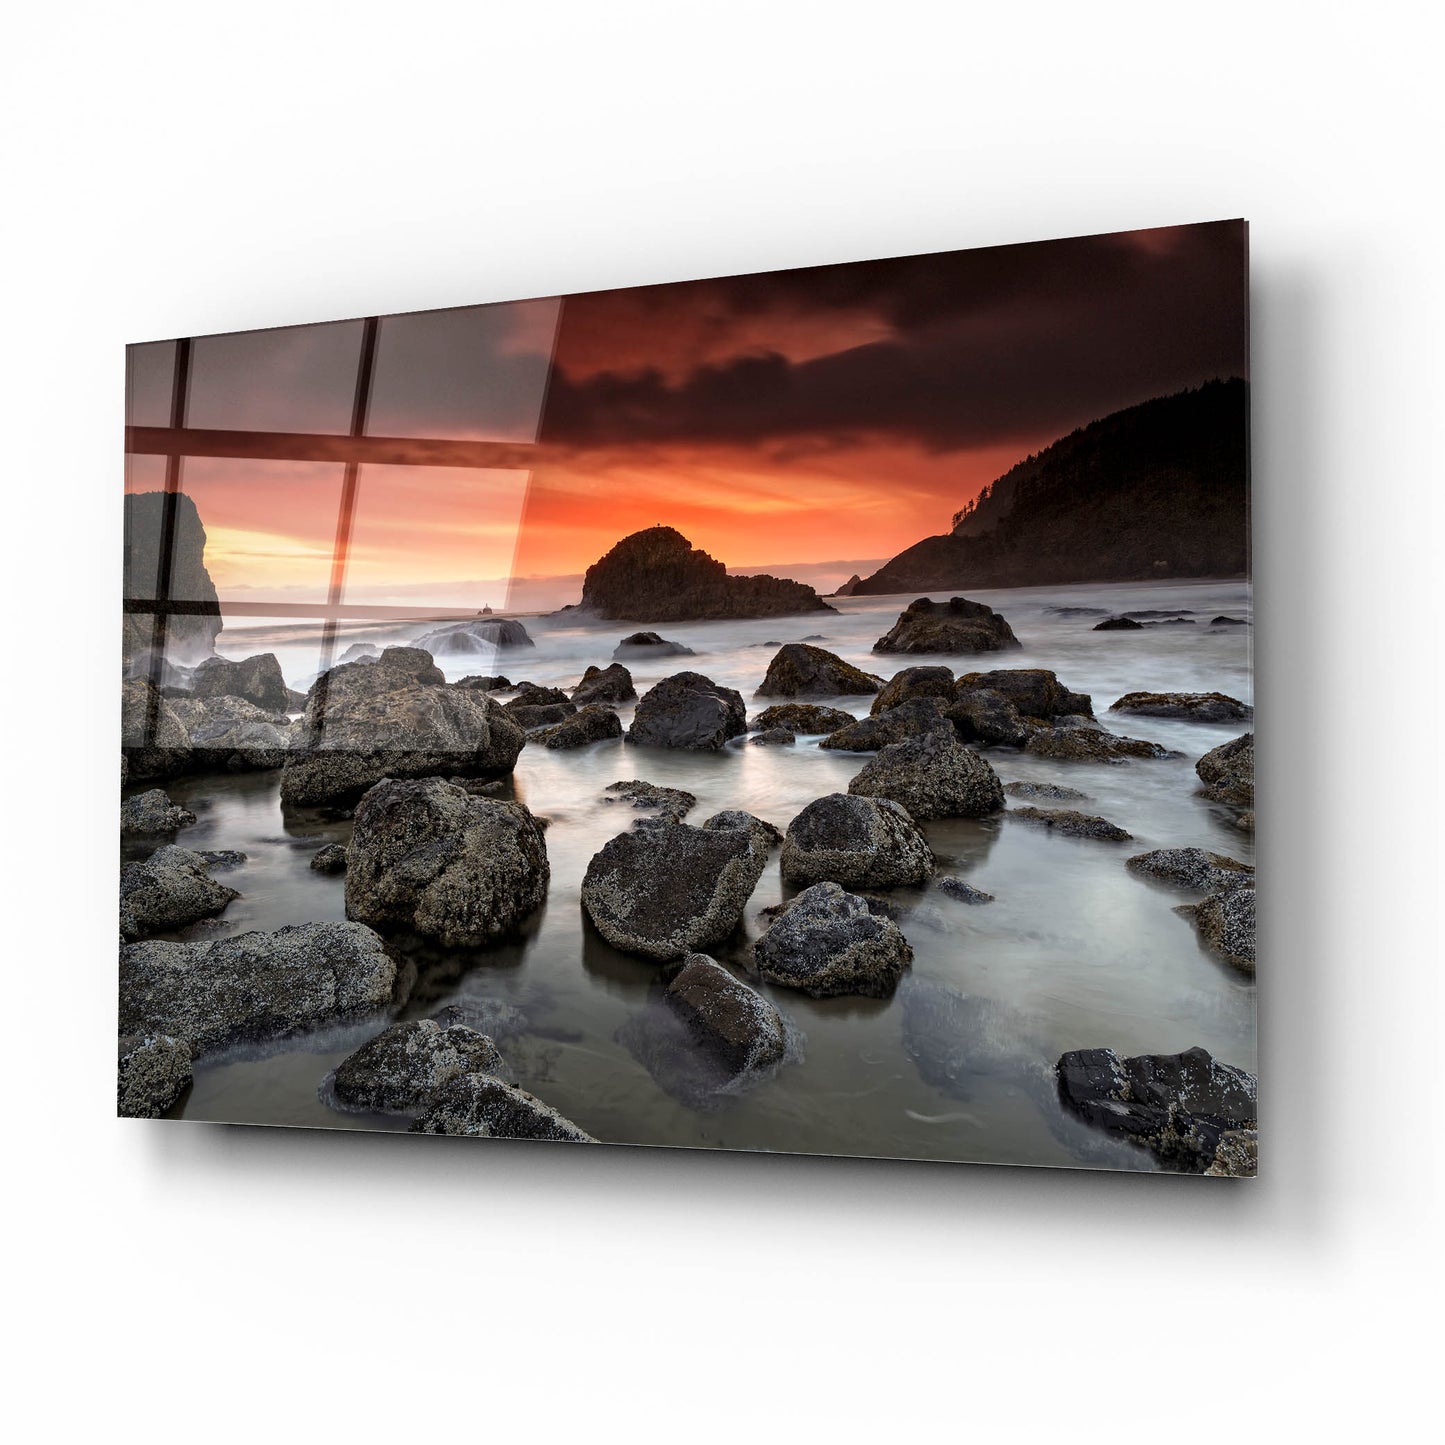 Epic Art 'Indian Beach Sunset' by Rick Berk, Acrylic Glass Wall Art,16x12